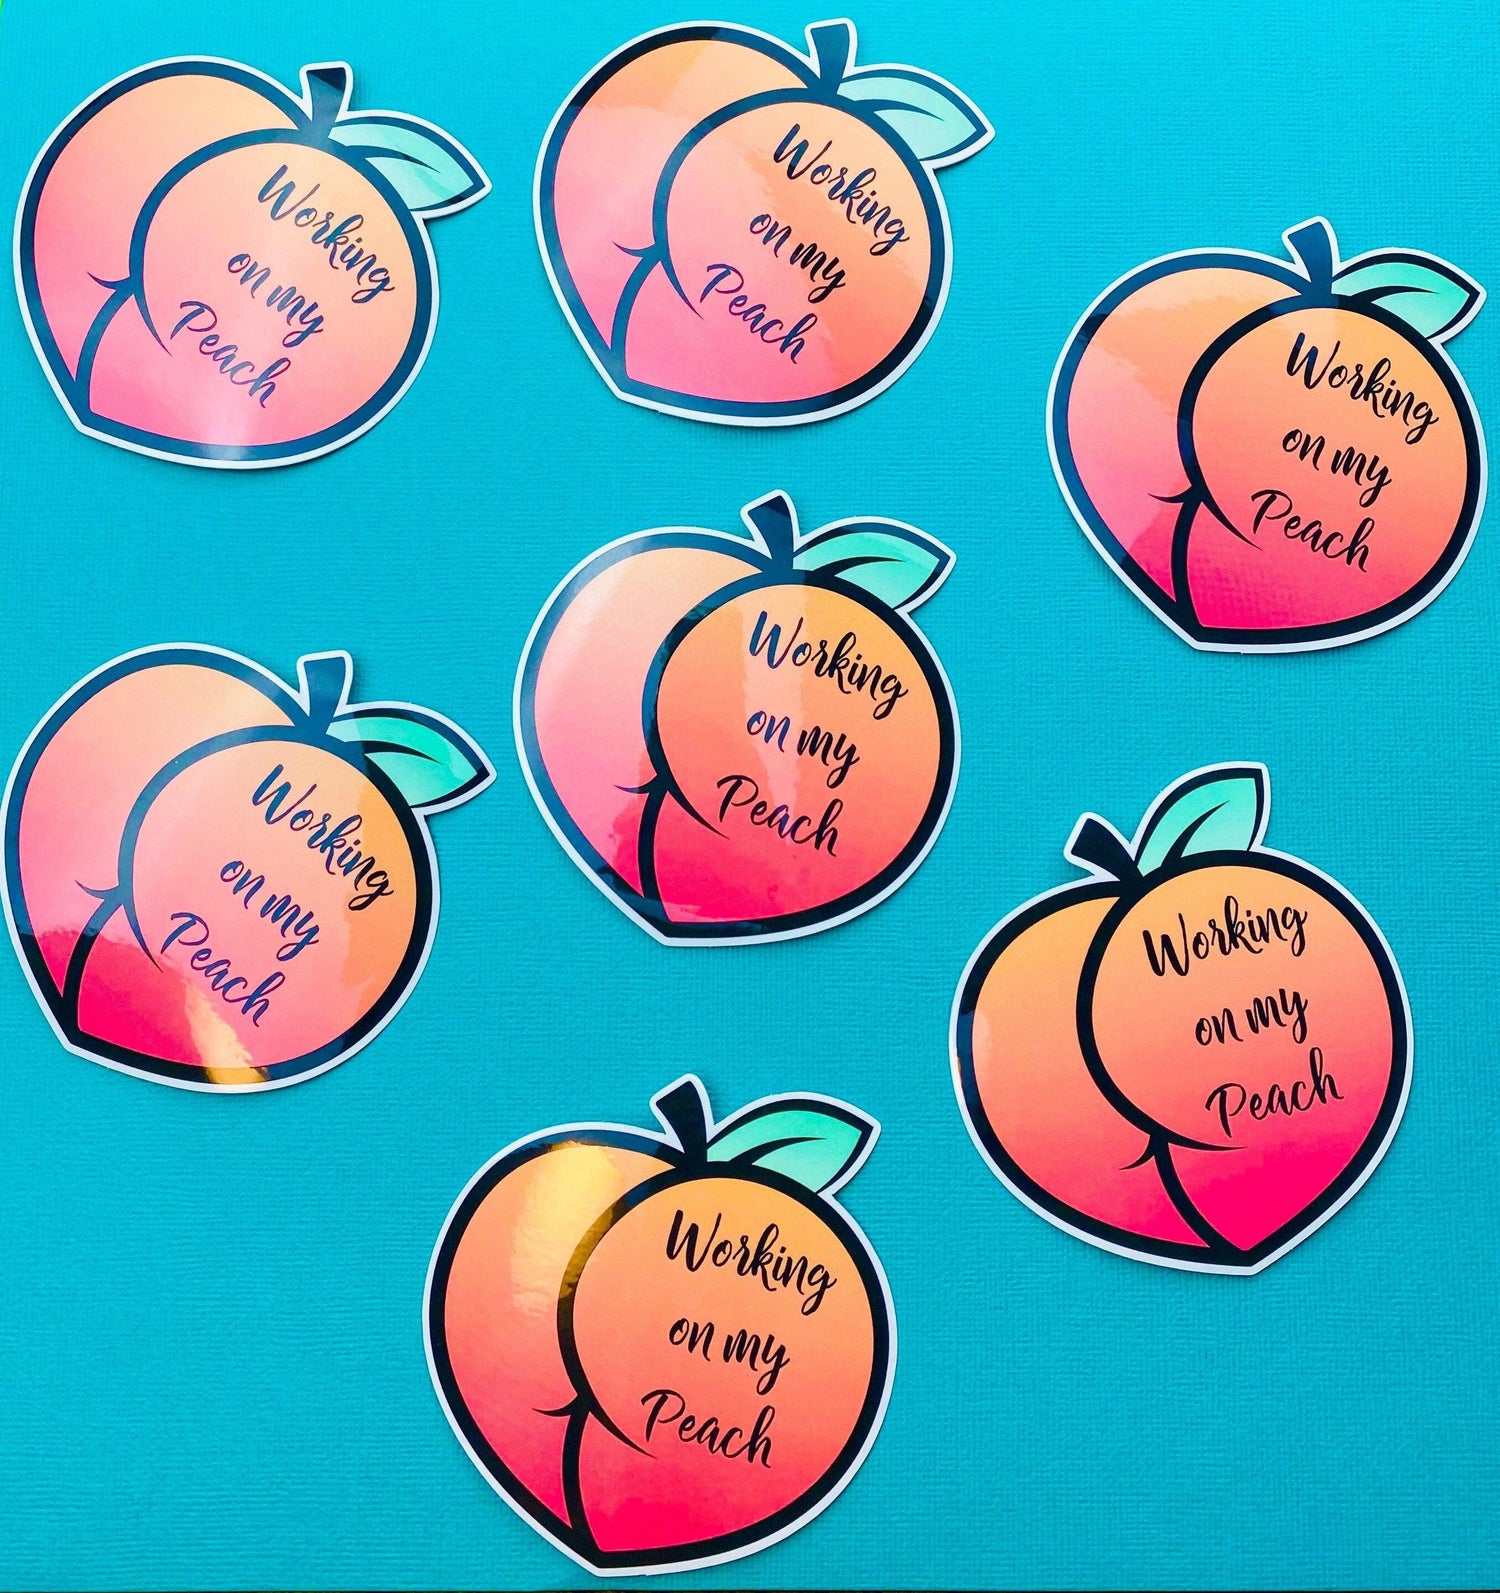 Peach Butt Gym Sticker, Peach Workout Sticker for Water Bottle, Gym Motivation Sticker, Weightlifting Sticker, Working on My Peach - Ottos Grotto :: Stickers For Your Stuff